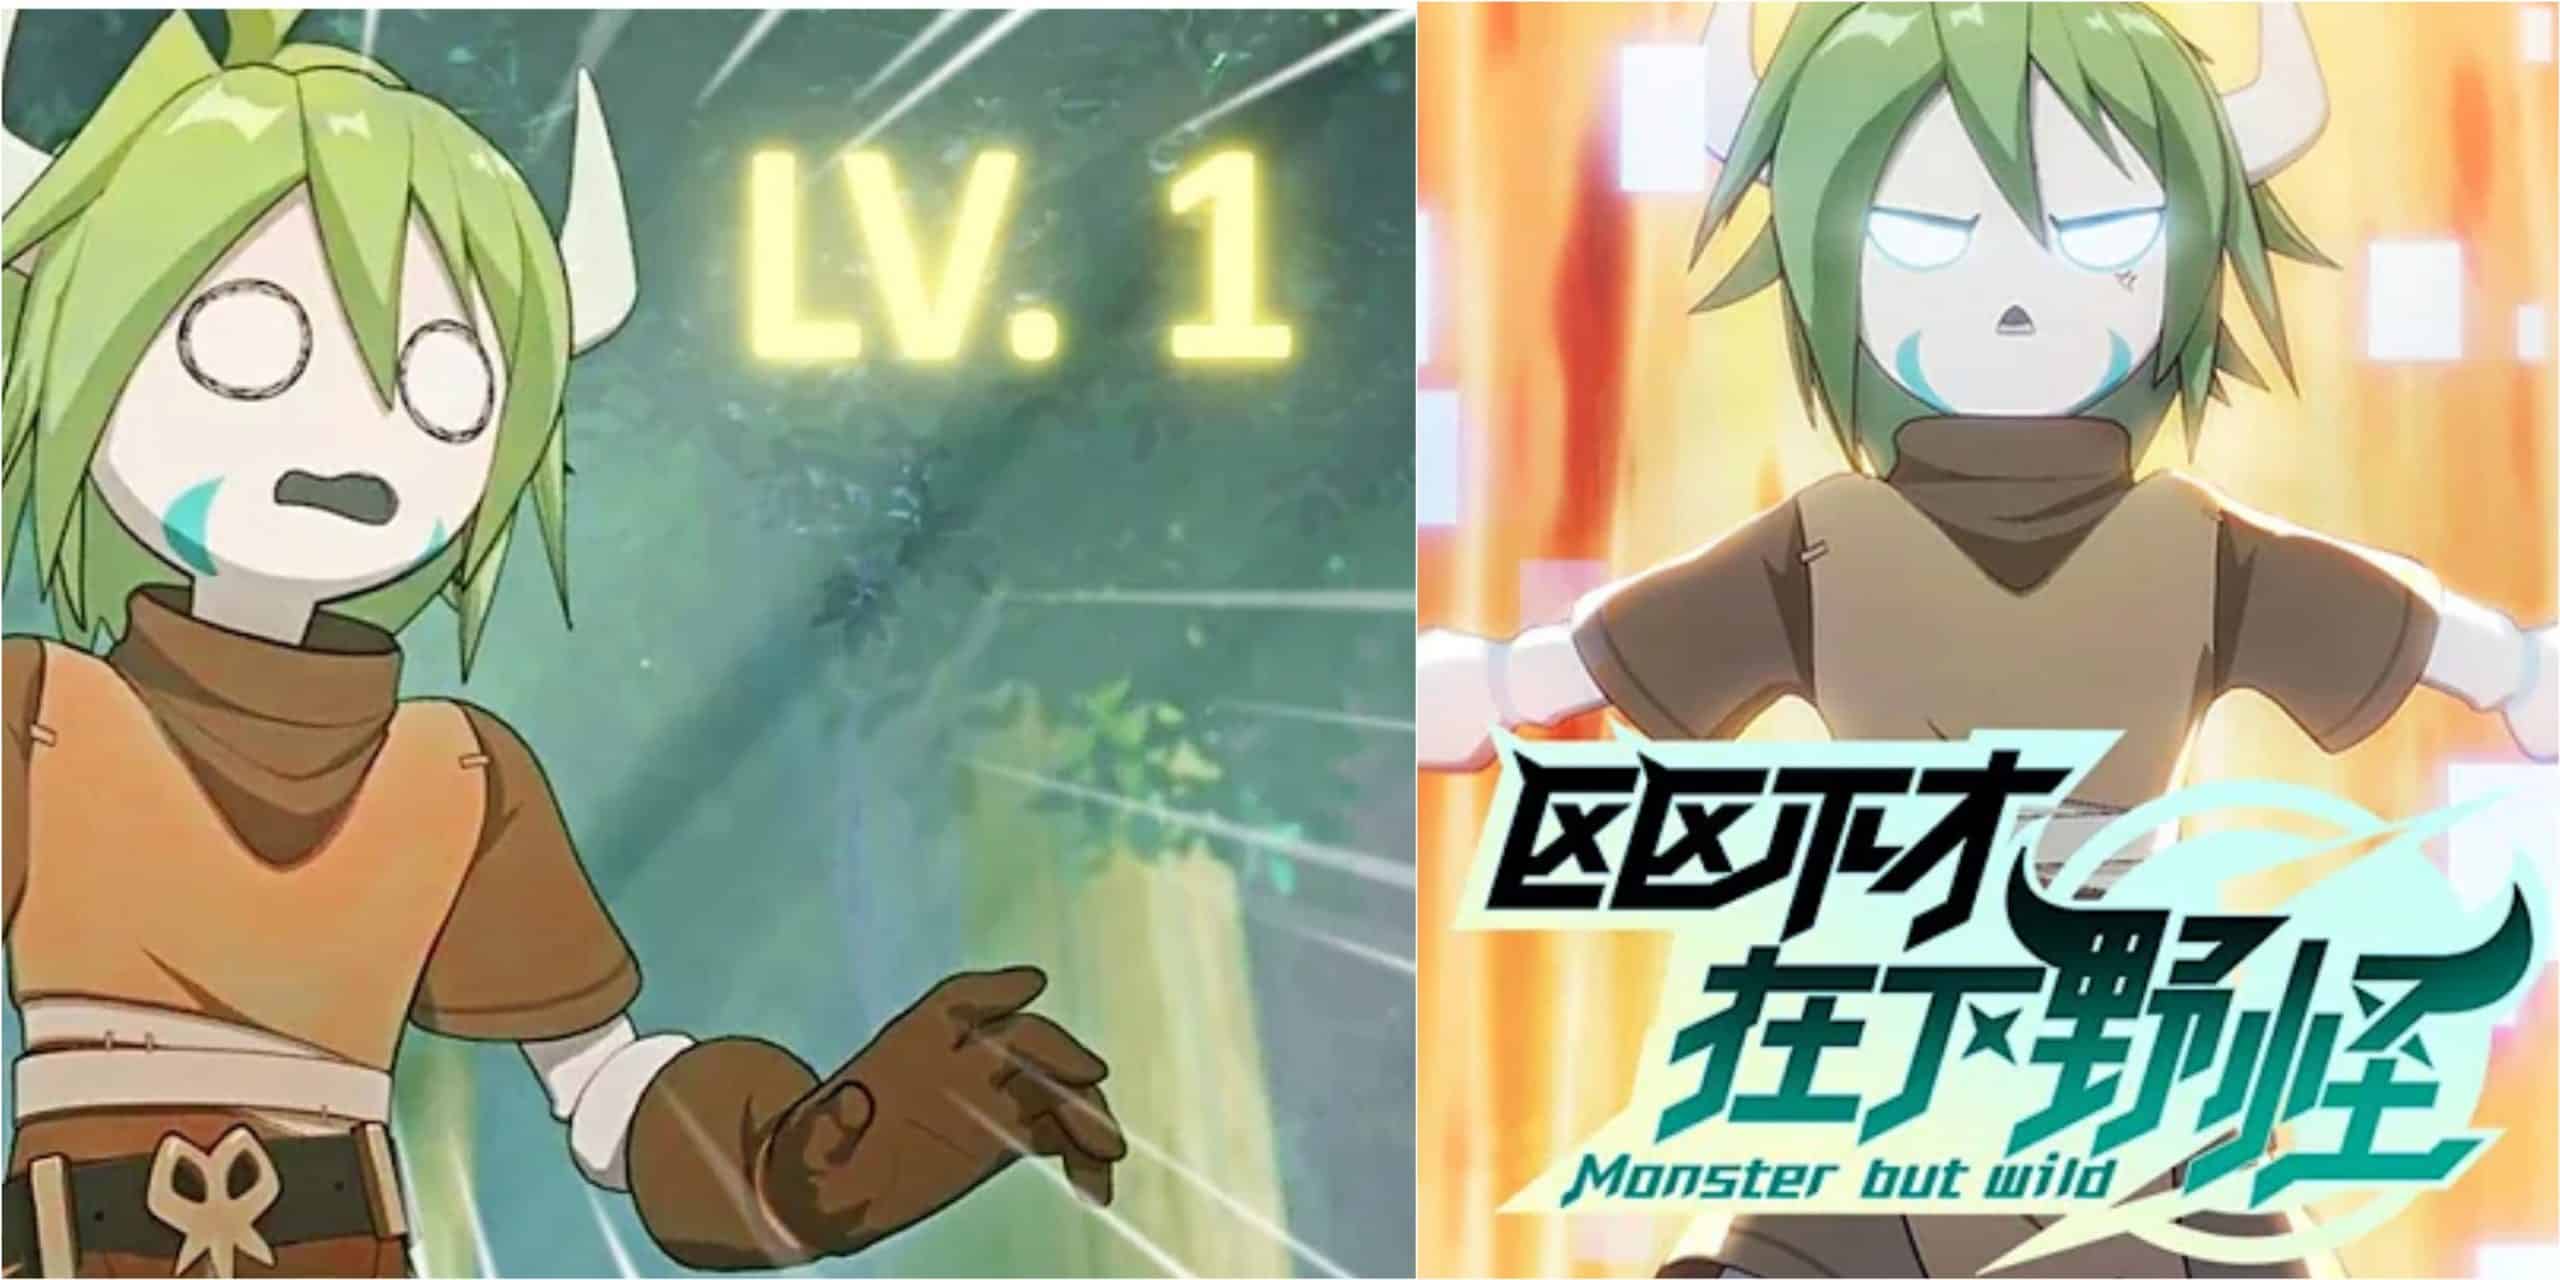 Tóm tắt nội dung Anime Hành Động Trung Quốc Monsters But Wild Tập 9 